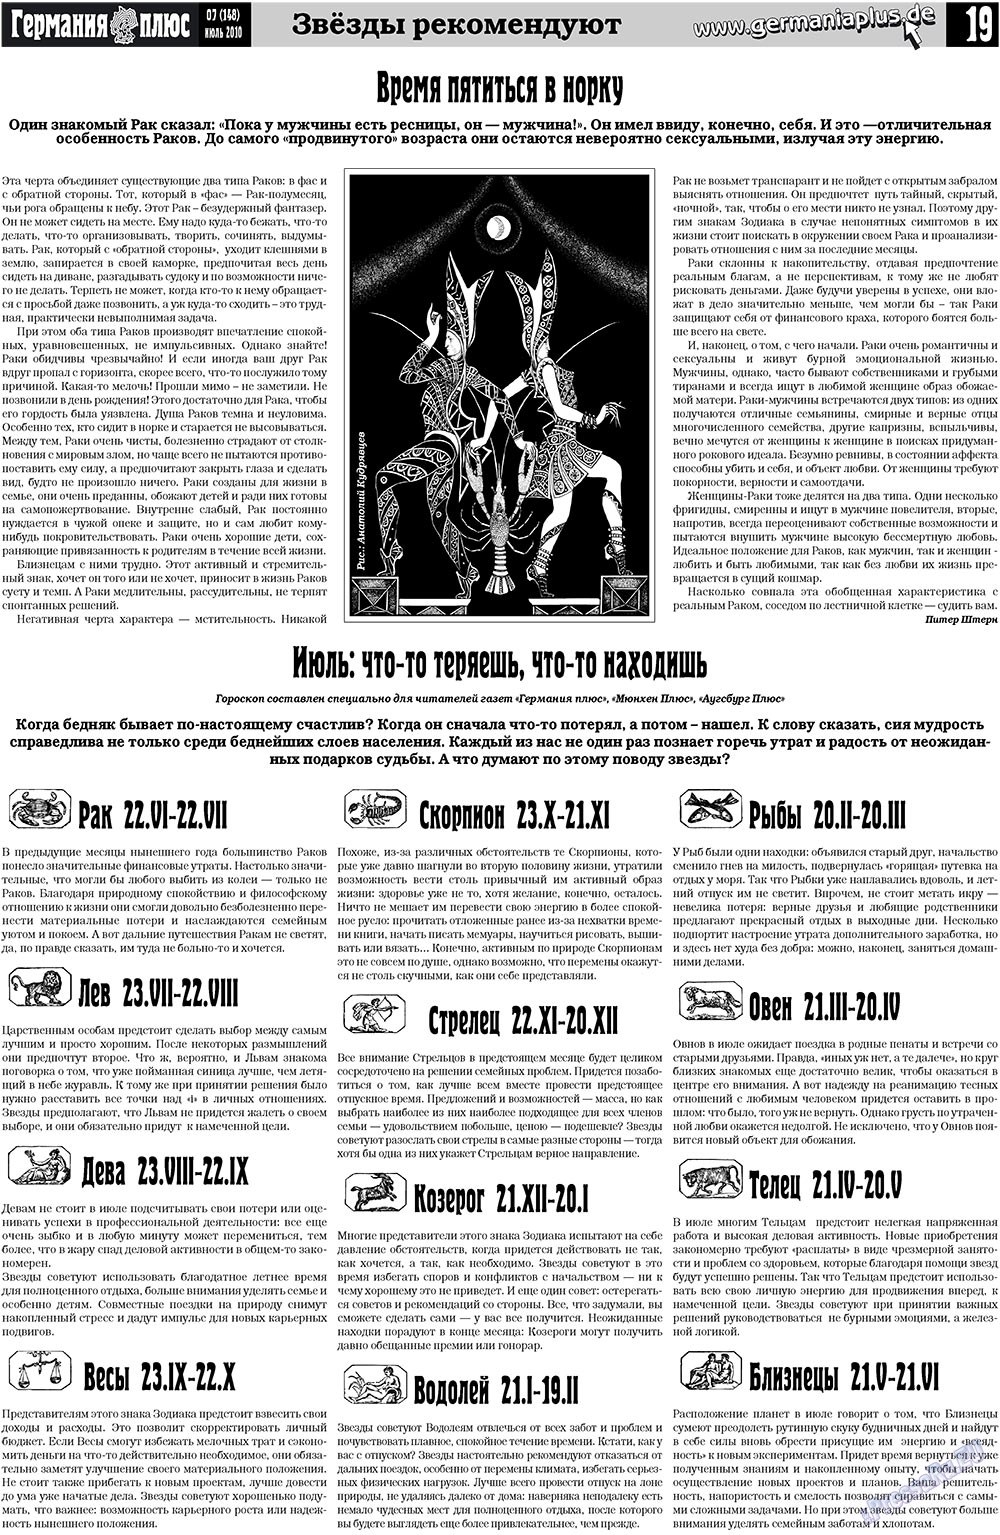 Германия плюс (газета). 2010 год, номер 7, стр. 19